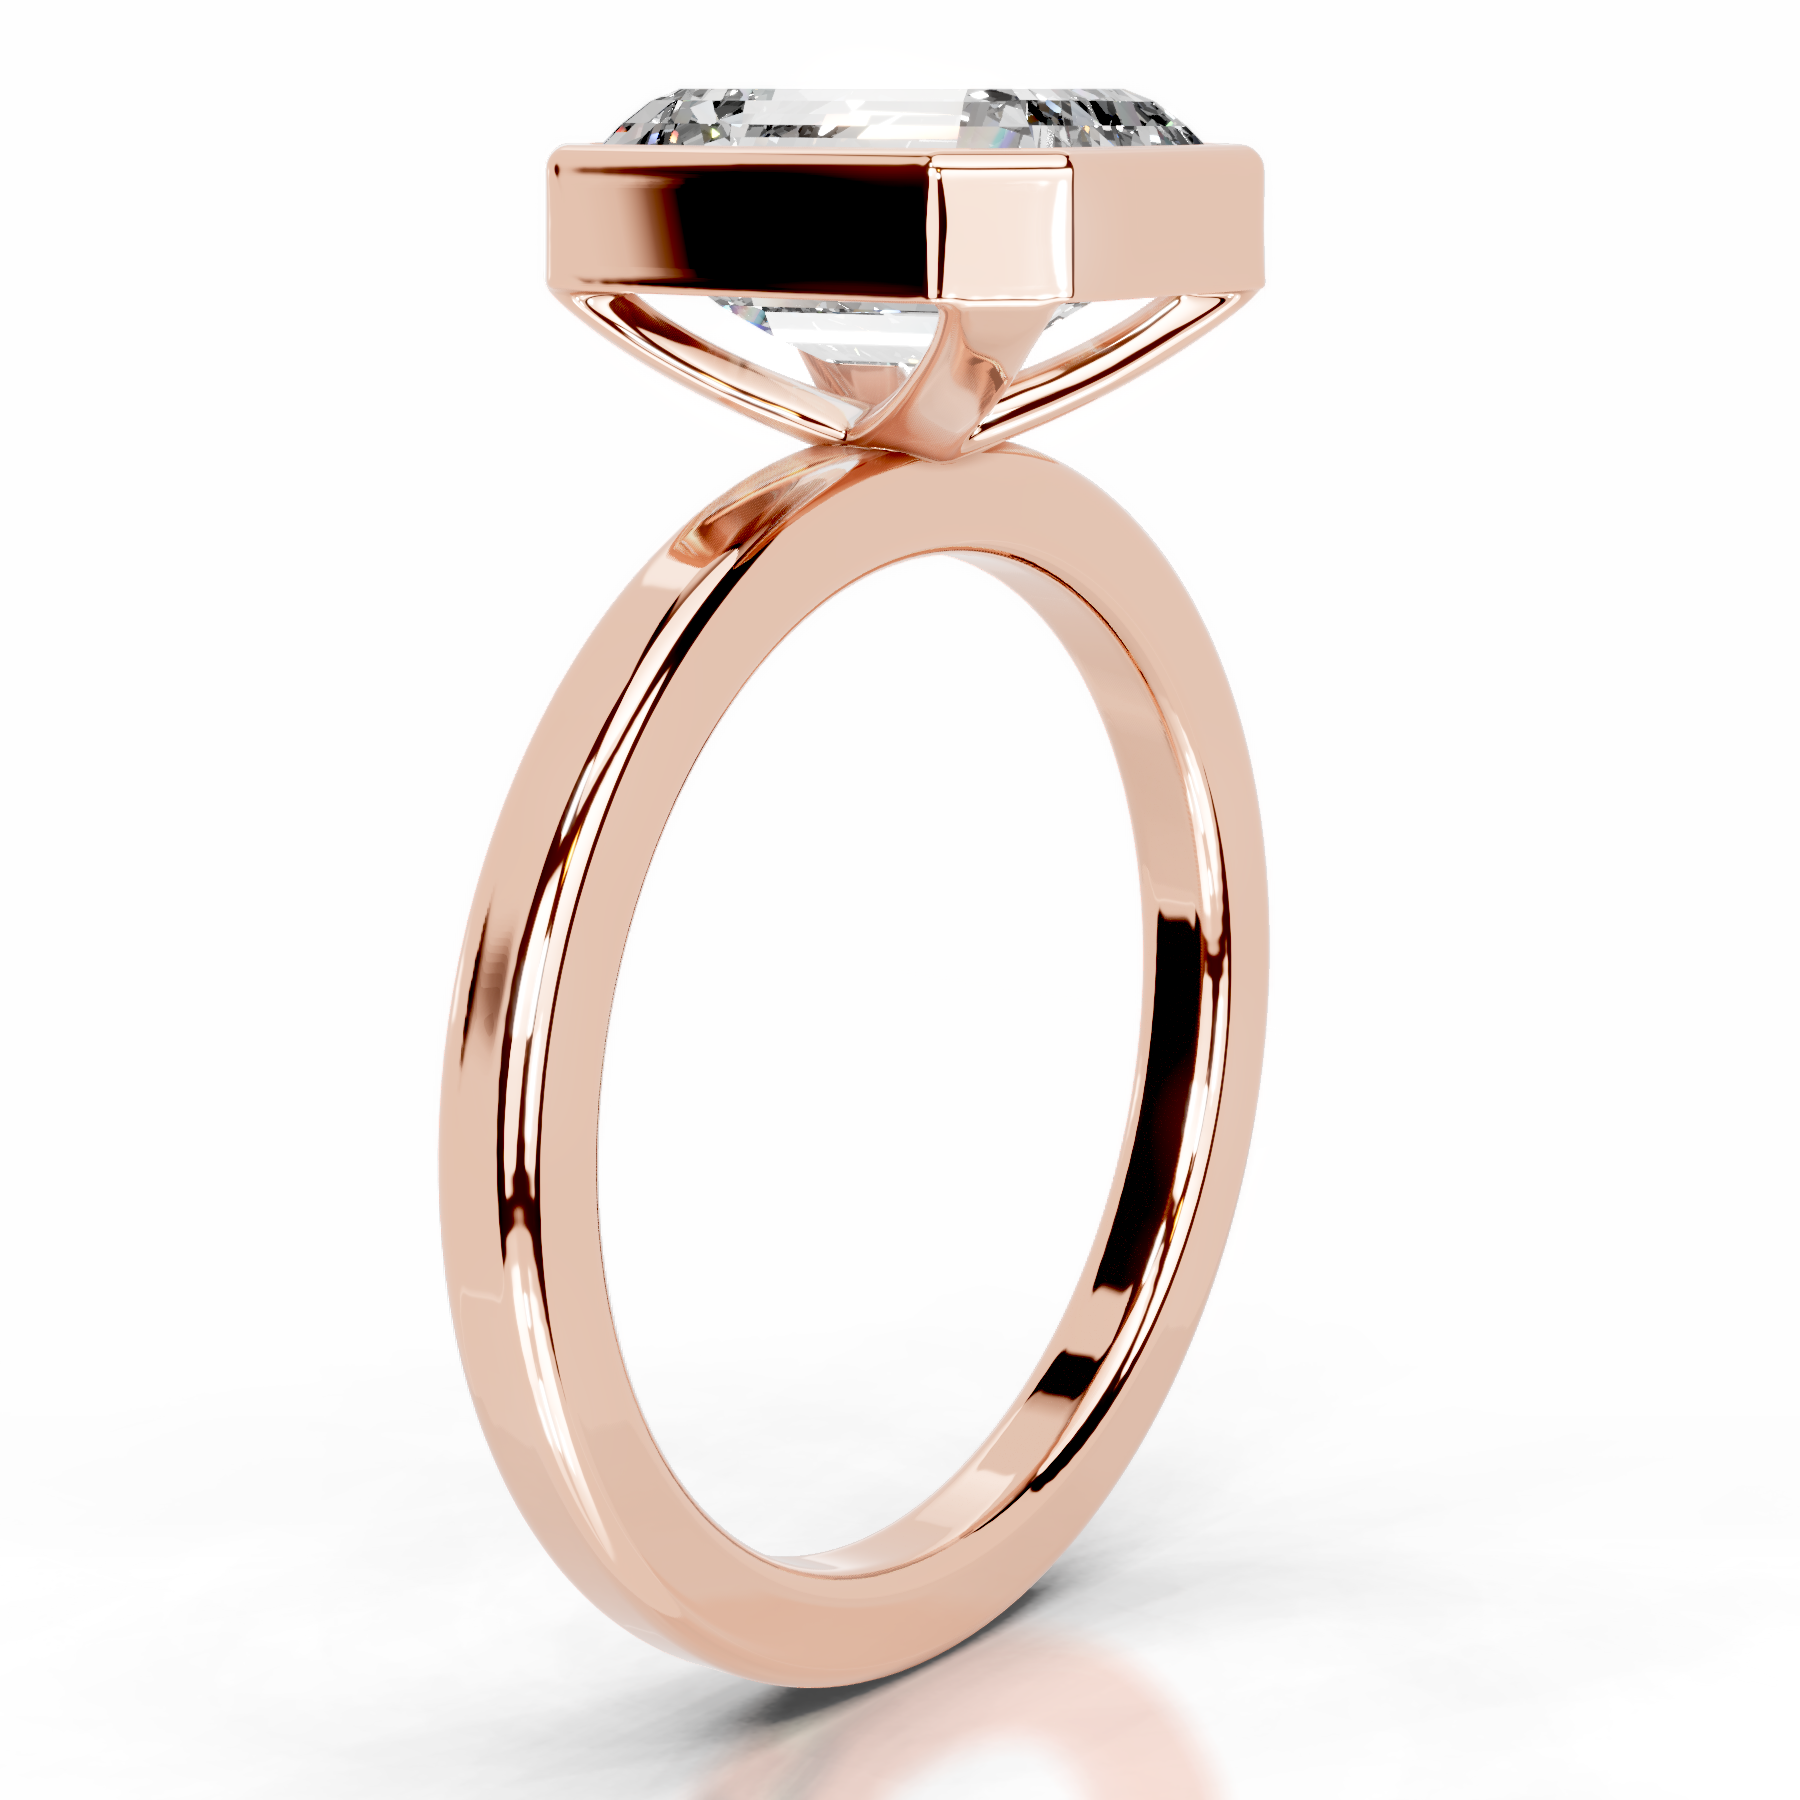 Dima Lab Grown Diamond Ring   (2 Carat) -14K Rose Gold